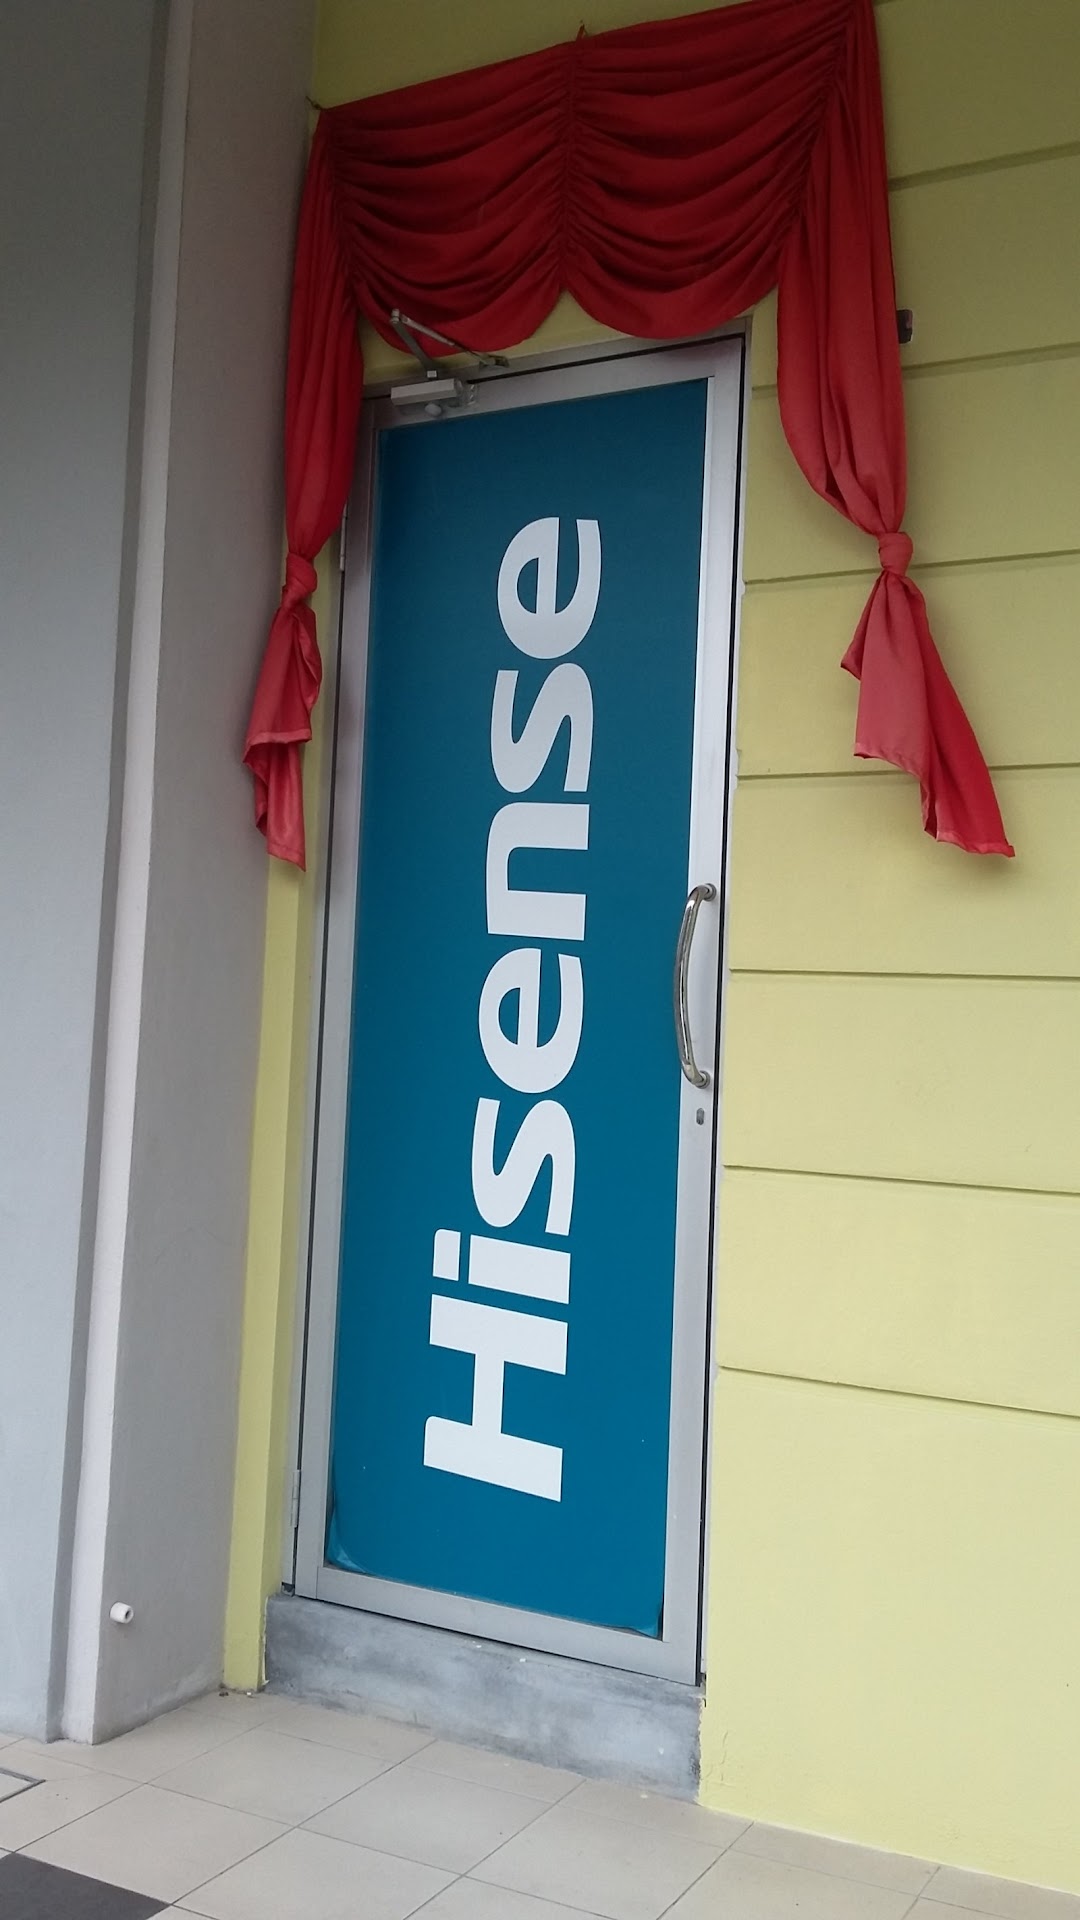 Hisense Malaysia